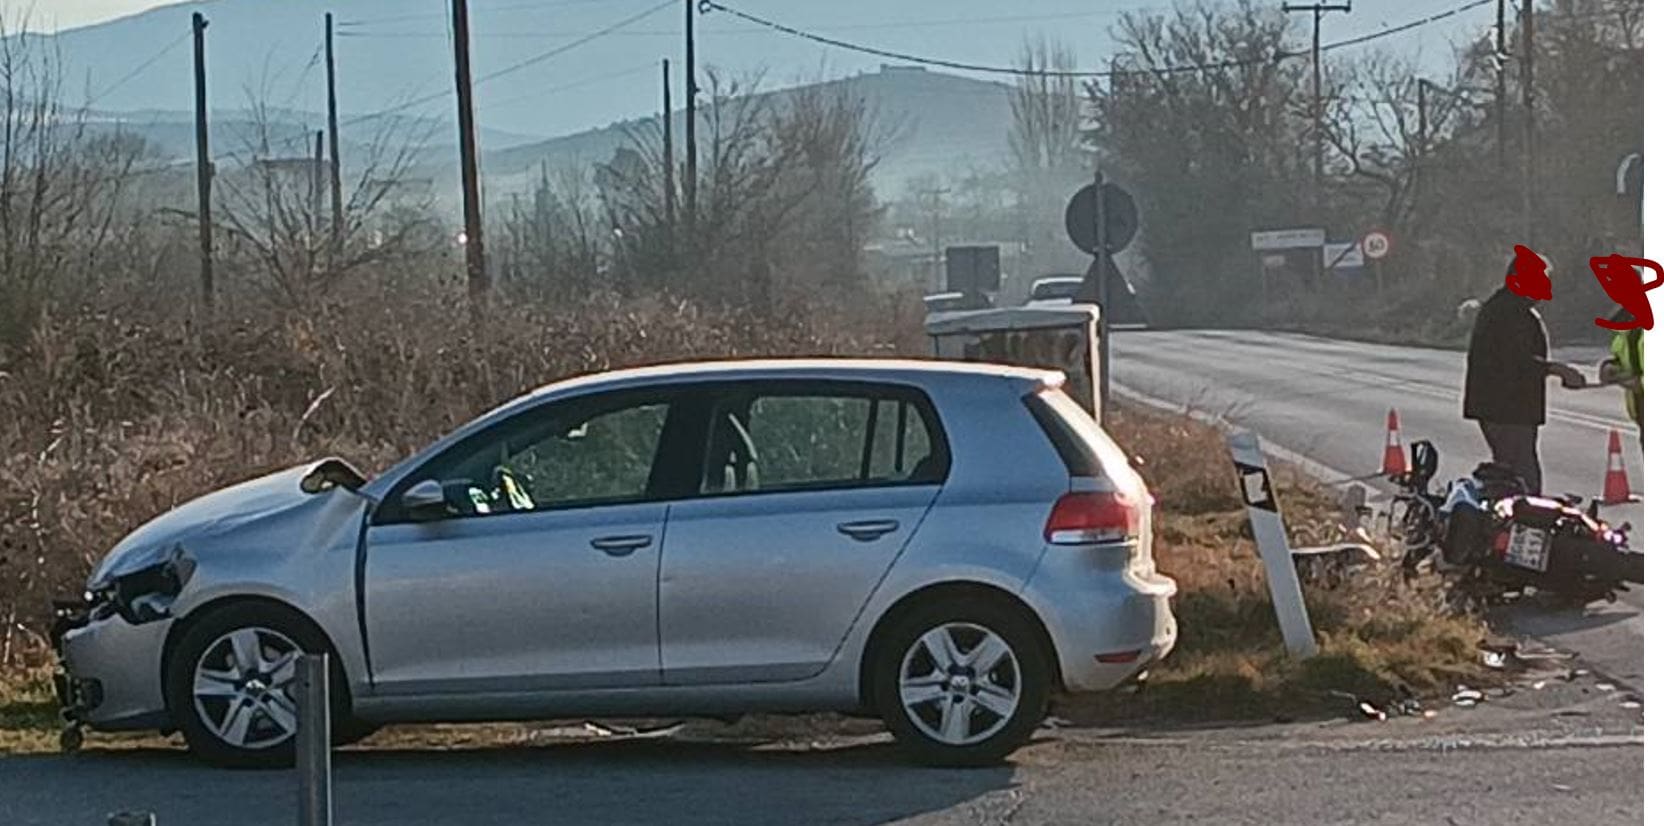 Ώρα 08:20 π.μ.: Τροχαίο ατύχημα, στην είσοδο της Κοζάνης από Λάρισα – Ι.Χ. αυτοκίνητο συγκρούσθηκε με μοτοσυκλέτα – Στο νοσοκομείο ο οδηγός της μοτοσυκλέτας (Βίντεο & Φωτογραφίες)